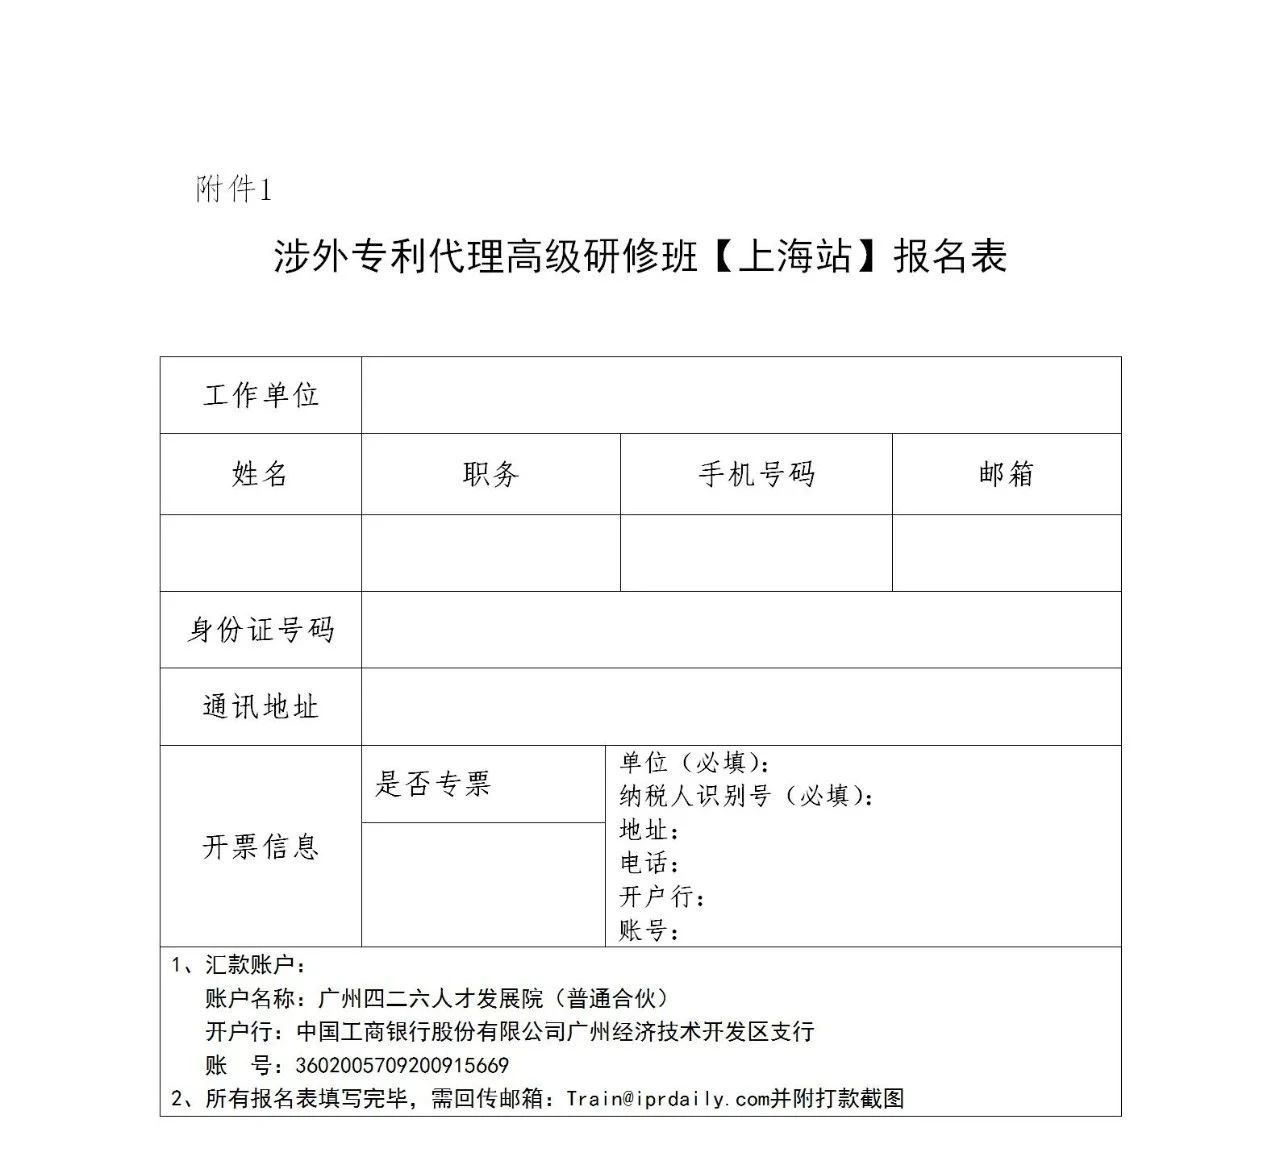 讲师公布！2021年「涉外专利代理高级研修班【上海站】」即将举办！